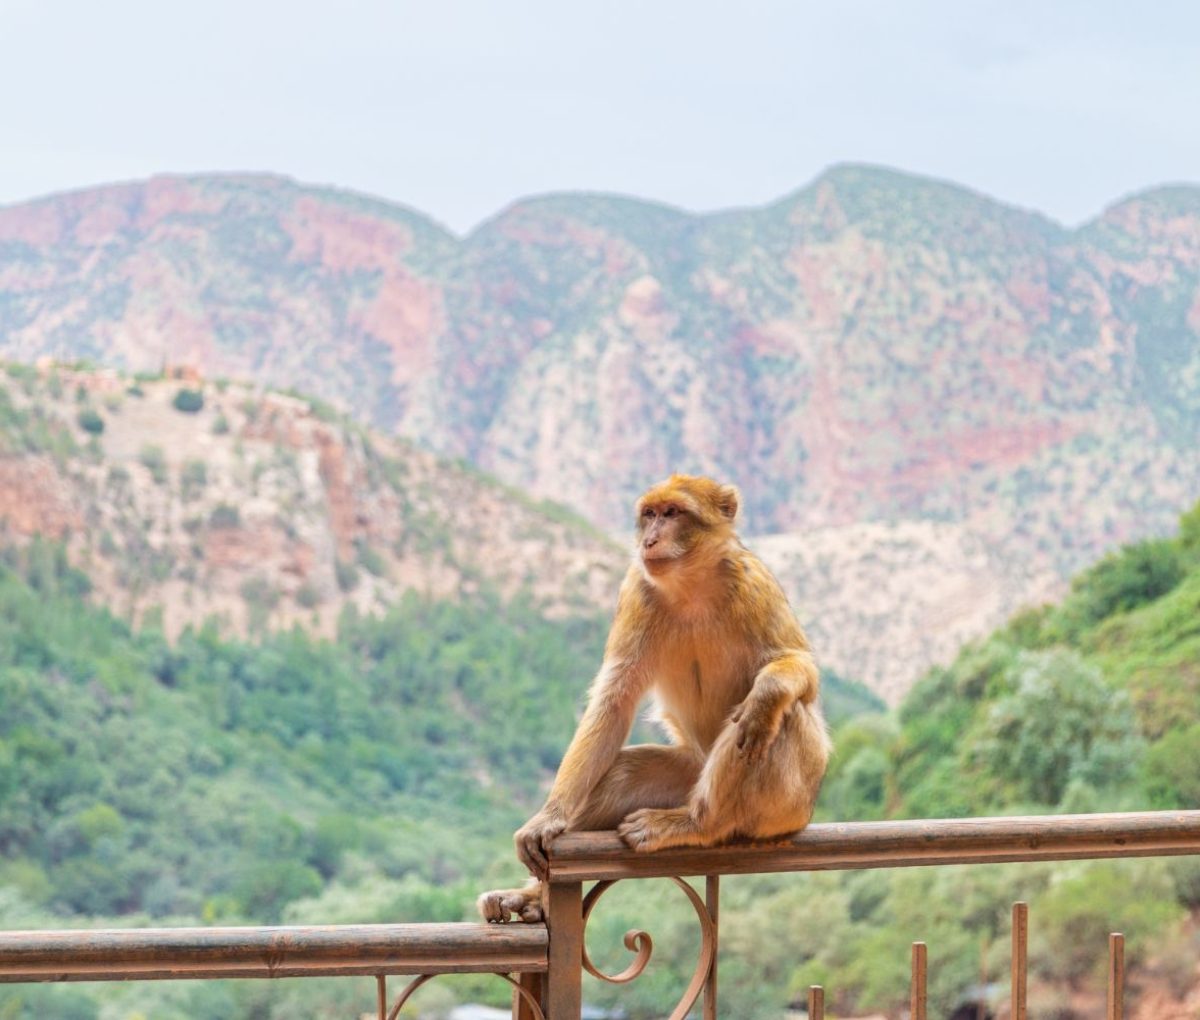 Monkey, The Atlas Mountains, Morocco © onmt